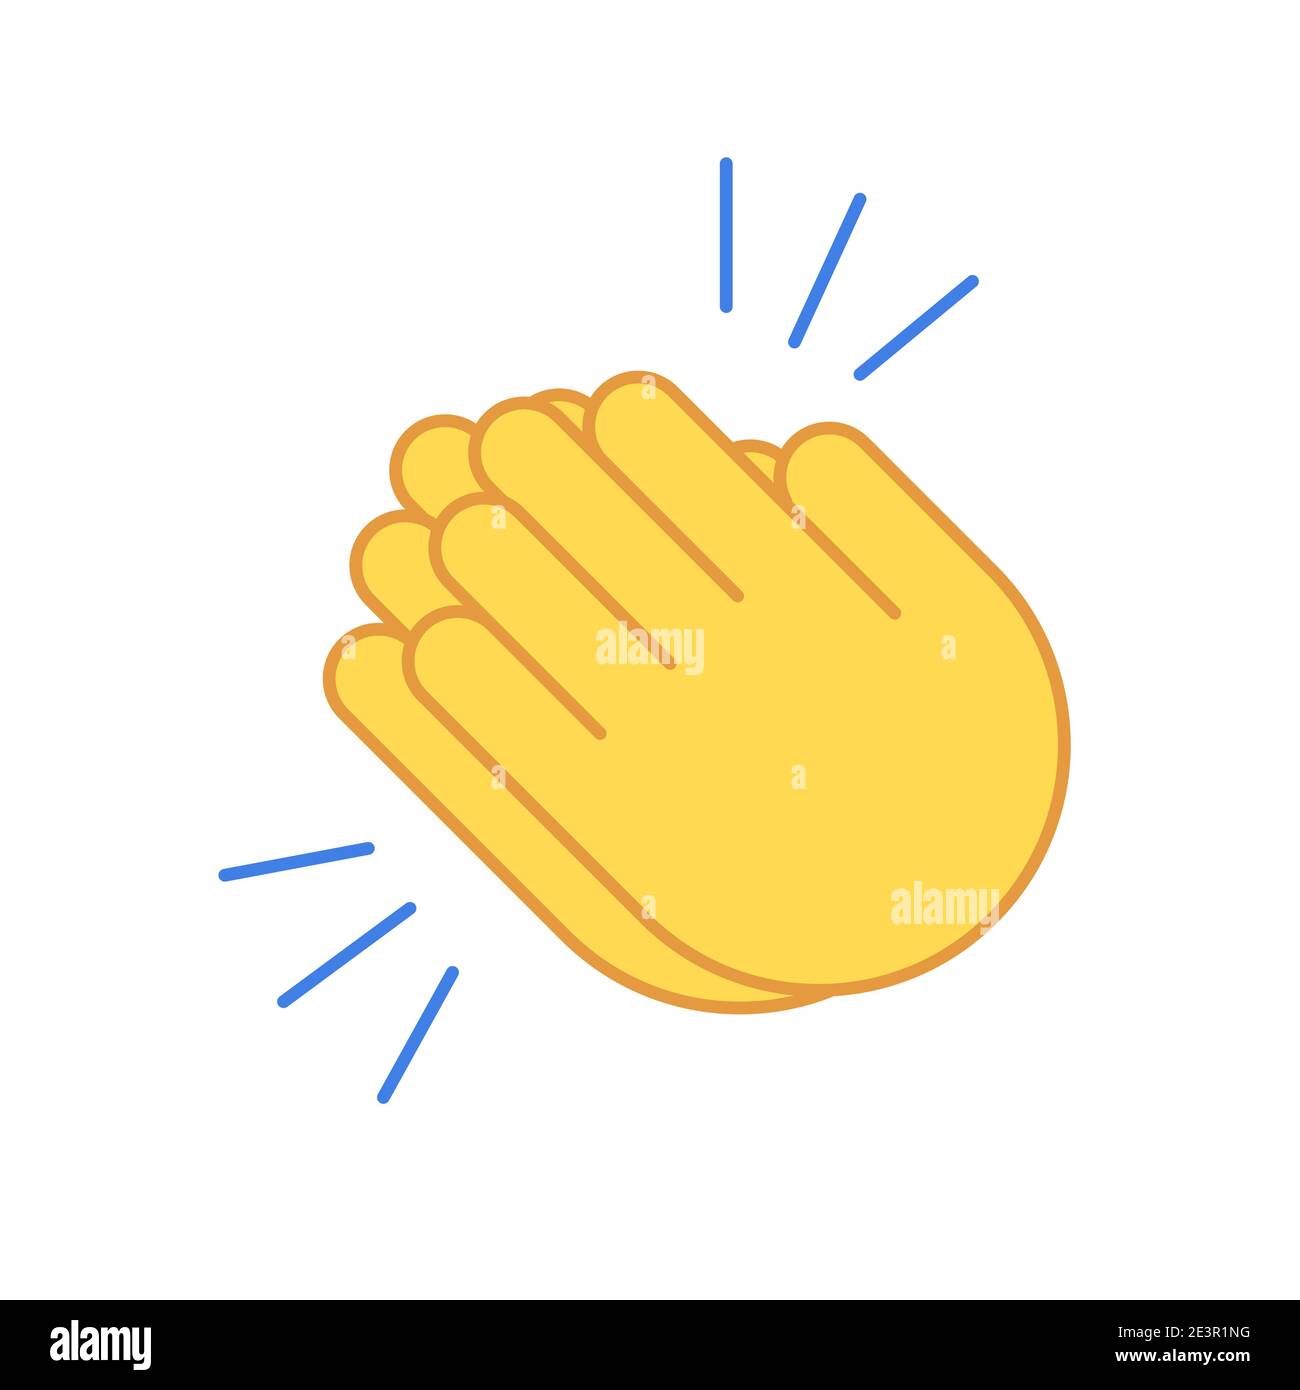 Emoji clap hand emoticon set encouragement cartoon applause icon. Clap hands vector icon Stock Vector